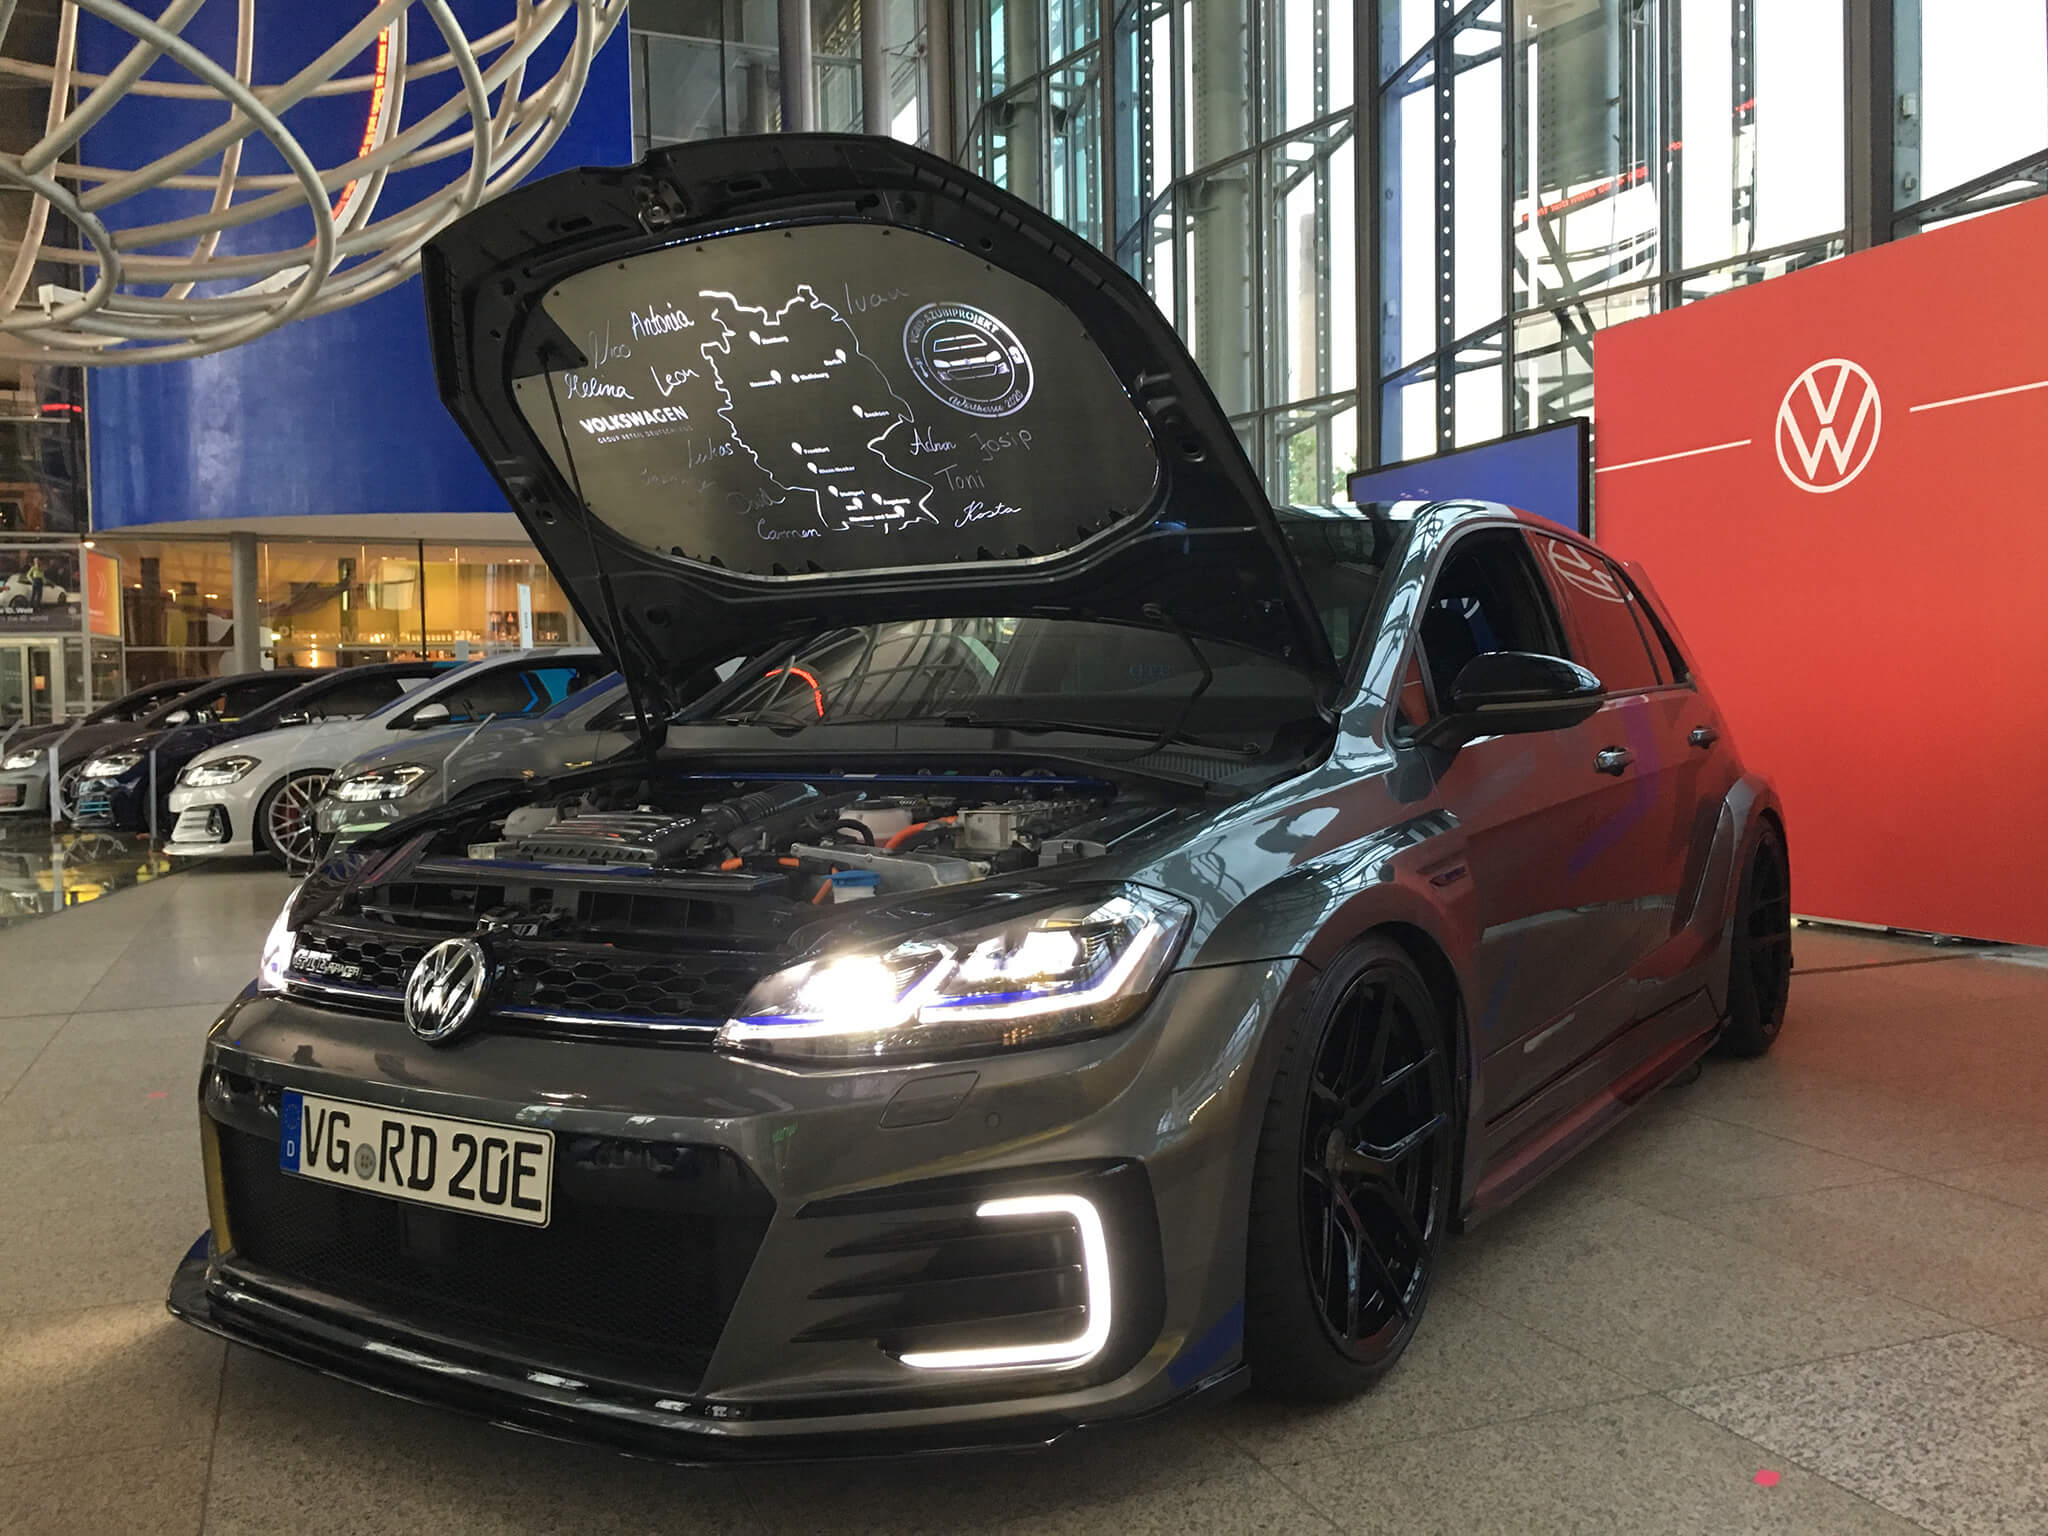 Volkswagen Golf GTE HyRacer 2020, Wörthersee